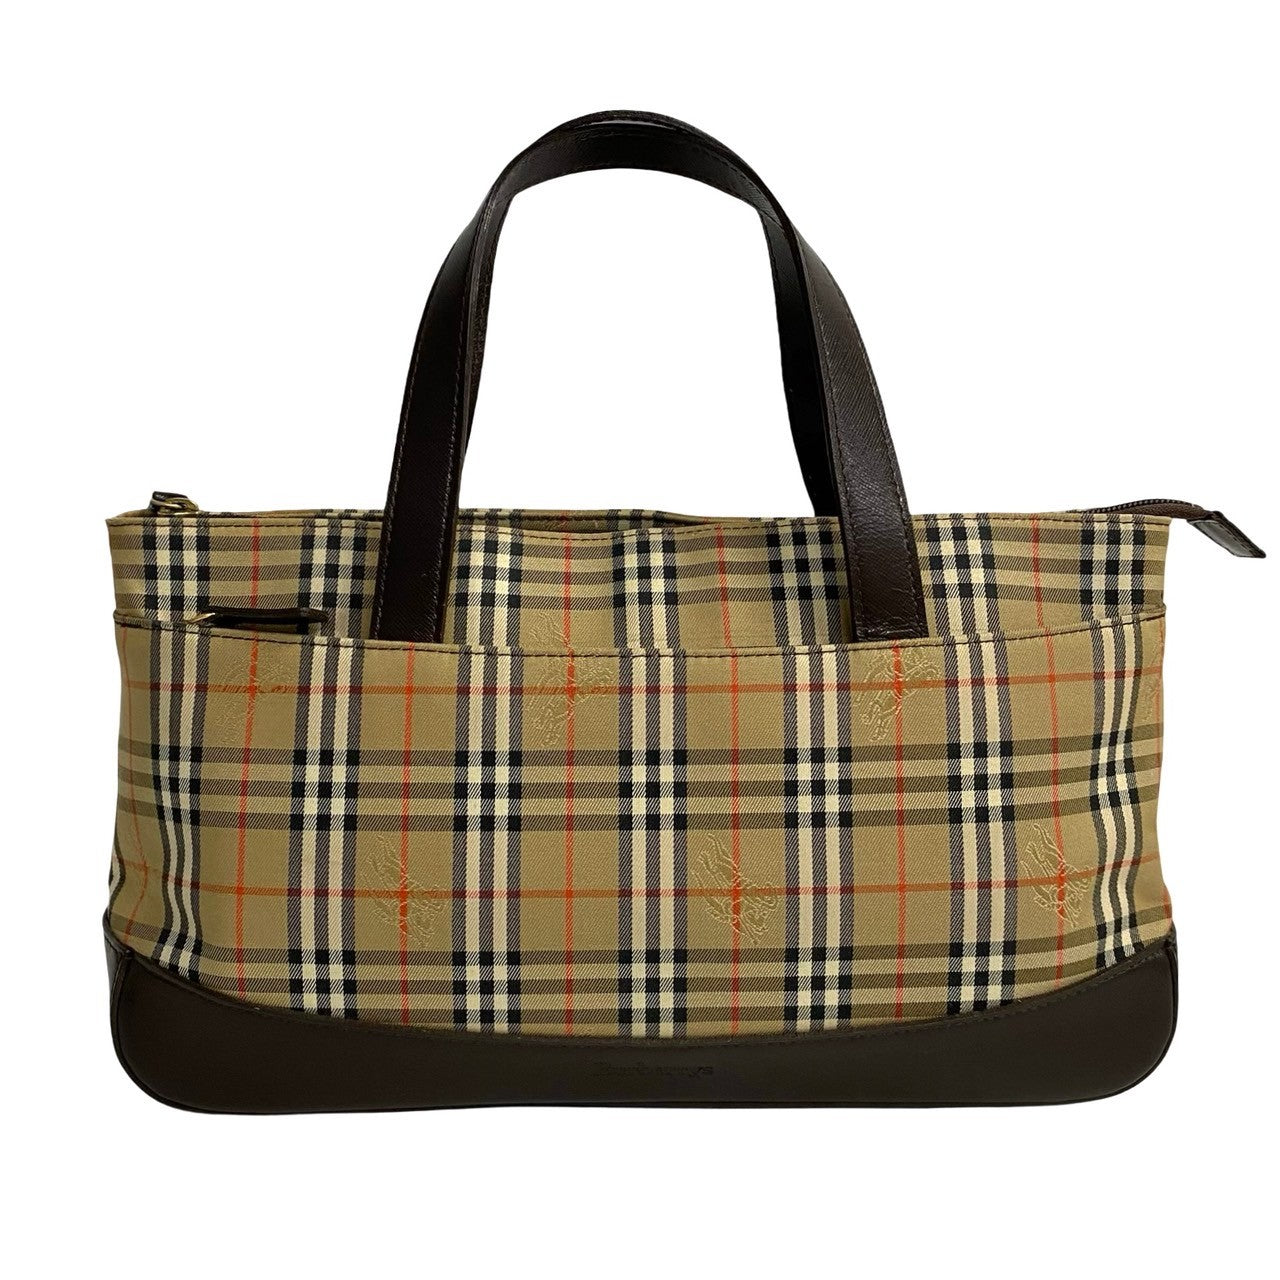 Burberry Haymarket Check Canvas & Leather Handbag Canvas Handbag in Excellent condition